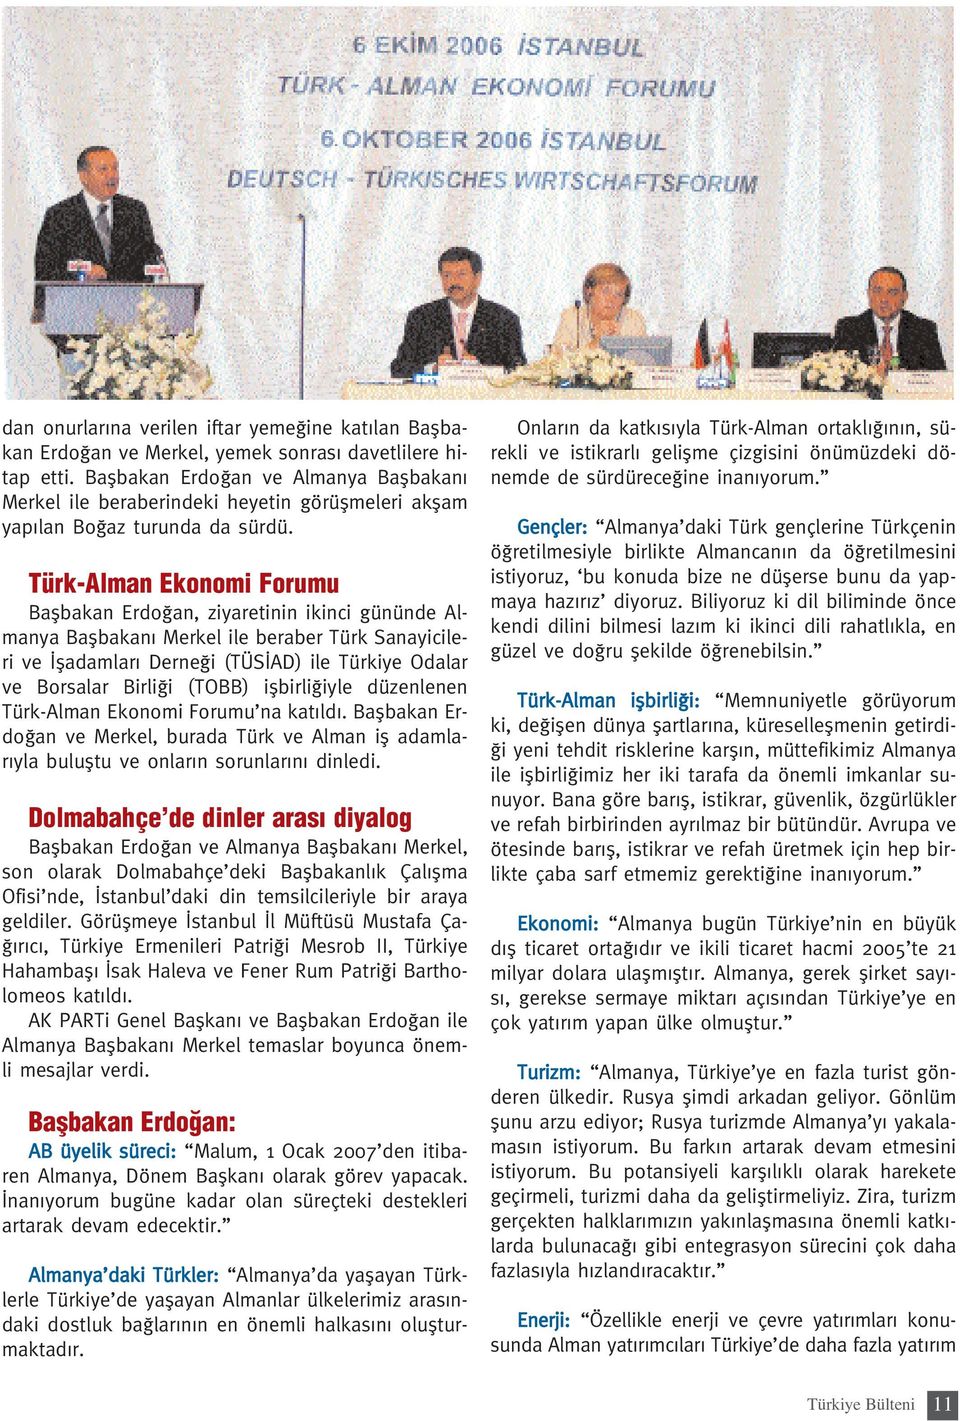 Türk-Alman Ekonomi Forumu Baflbakan Erdo an, ziyaretinin ikinci gününde Almanya Baflbakan Merkel ile beraber Türk Sanayicileri ve fladamlar Derne i (TÜS AD) ile Türkiye Odalar ve Borsalar Birli i